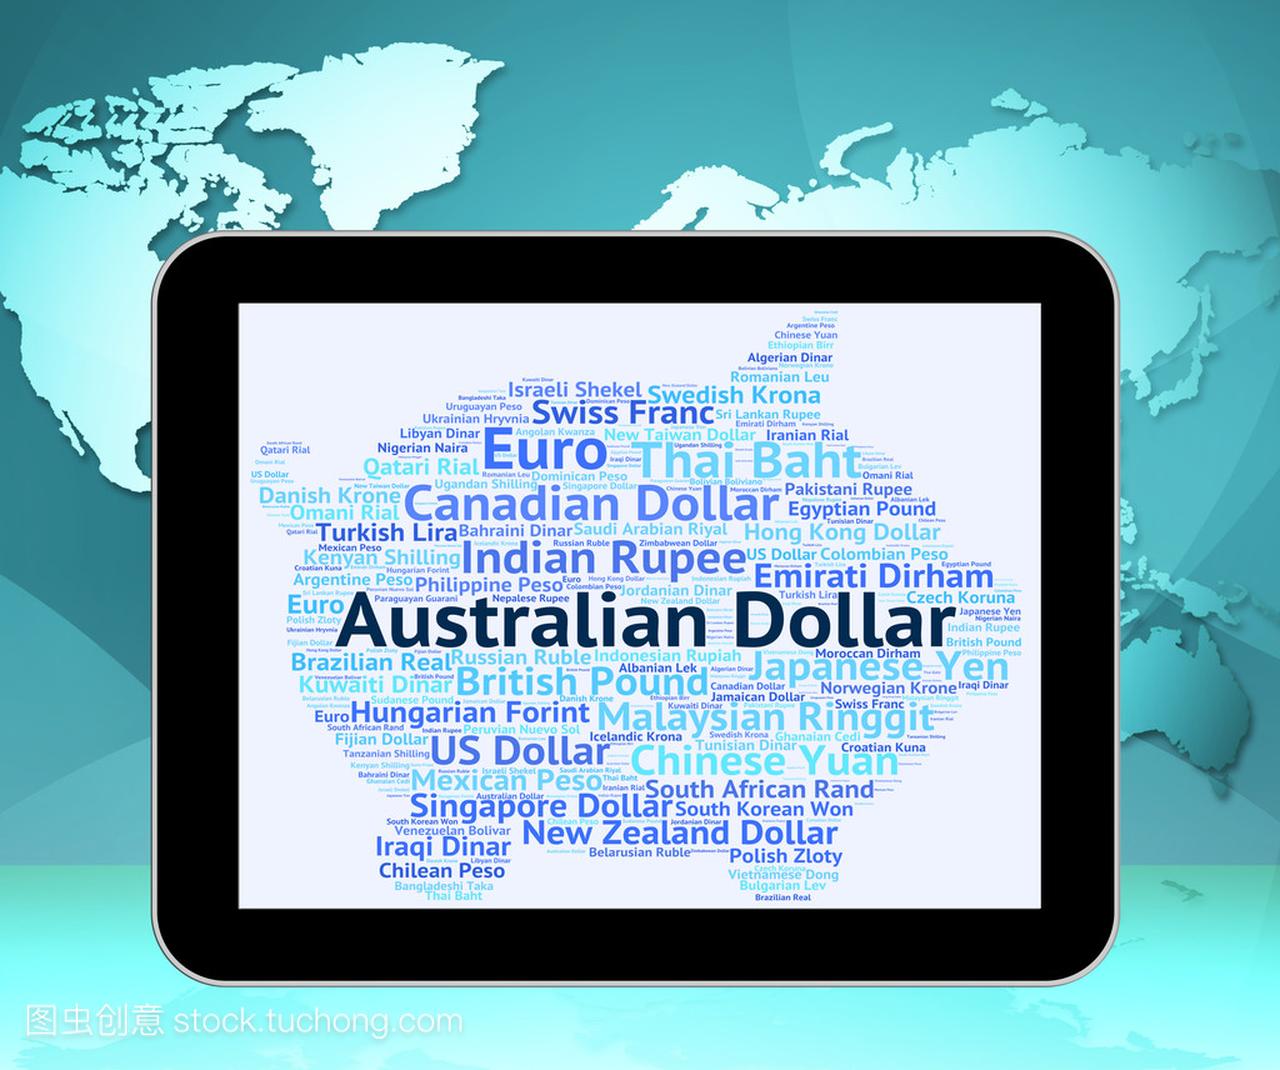 澳元兑美元意味着外汇交易和纸币